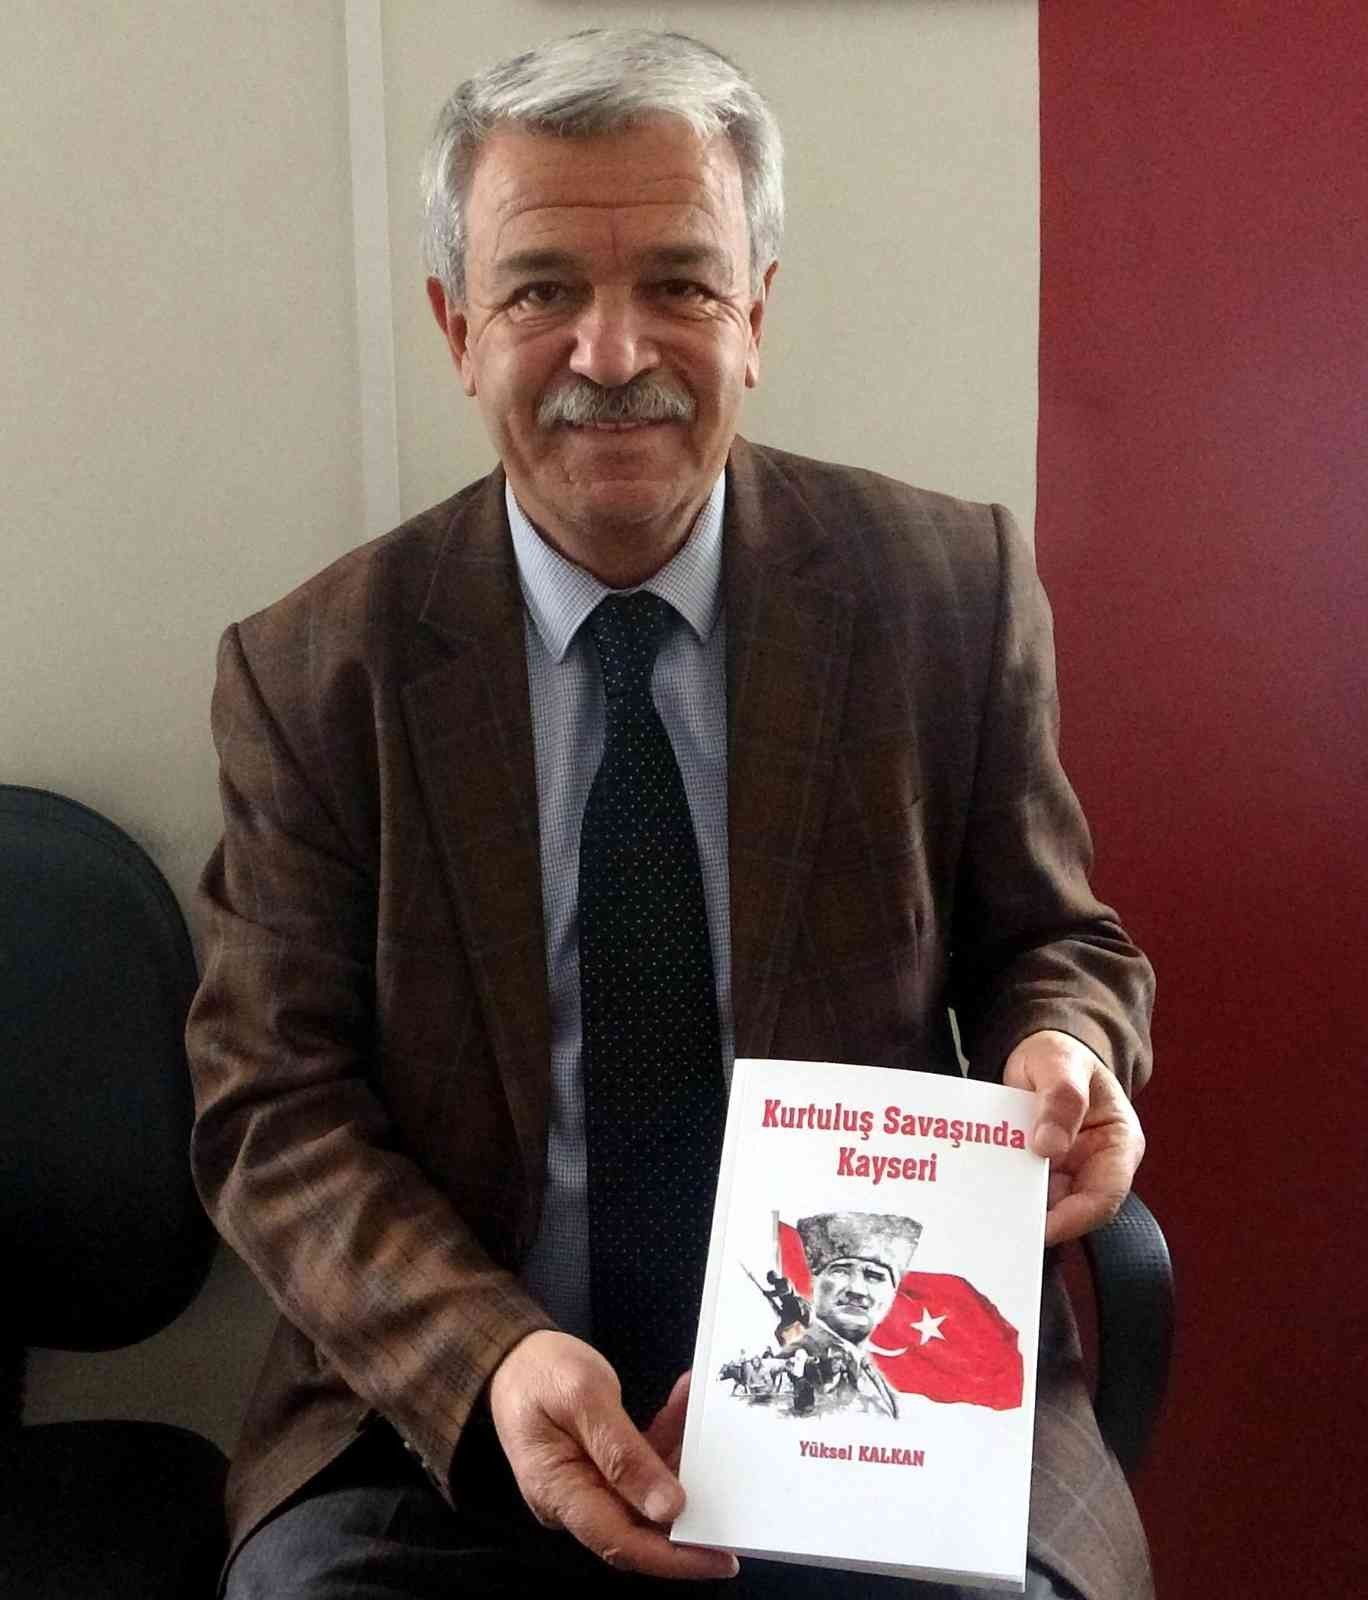 Gazeteci Yazar Yüksel Kalkan, ’Kurtuluş Savaşı’nda Kayseri’yi’ anlattı #kayseri